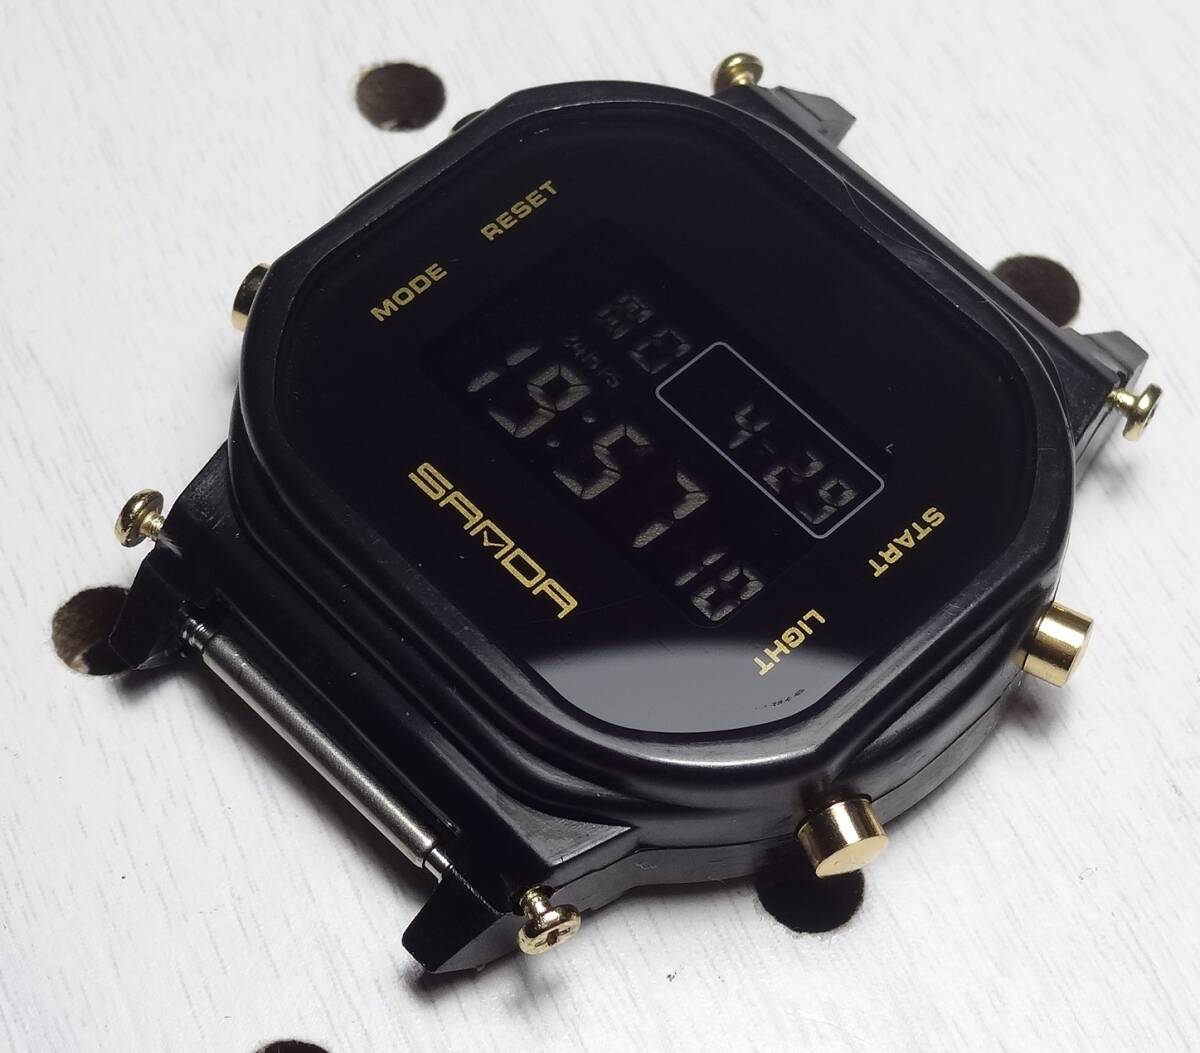 DW-5600 スピードモデル 互換モジュール 反転液晶 ゴールド デジタルウォッチ 腕時計_画像1